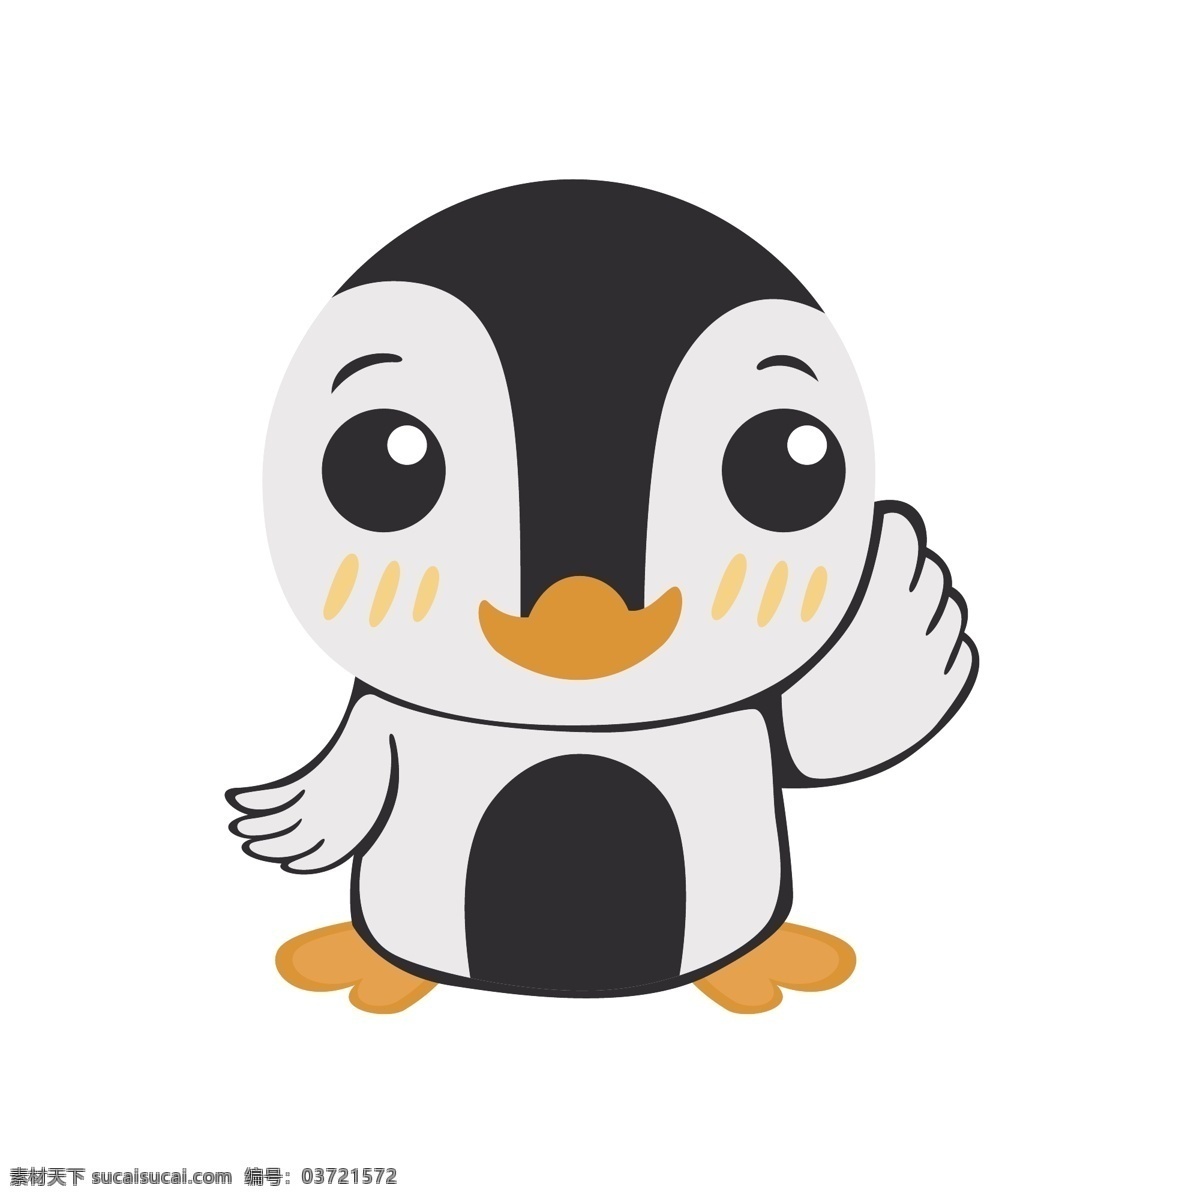 可爱 企鹅 矢量 卡通 卡通动物 可爱动物 可爱的 可爱的企鹅 卡通的 卡通的企鹅